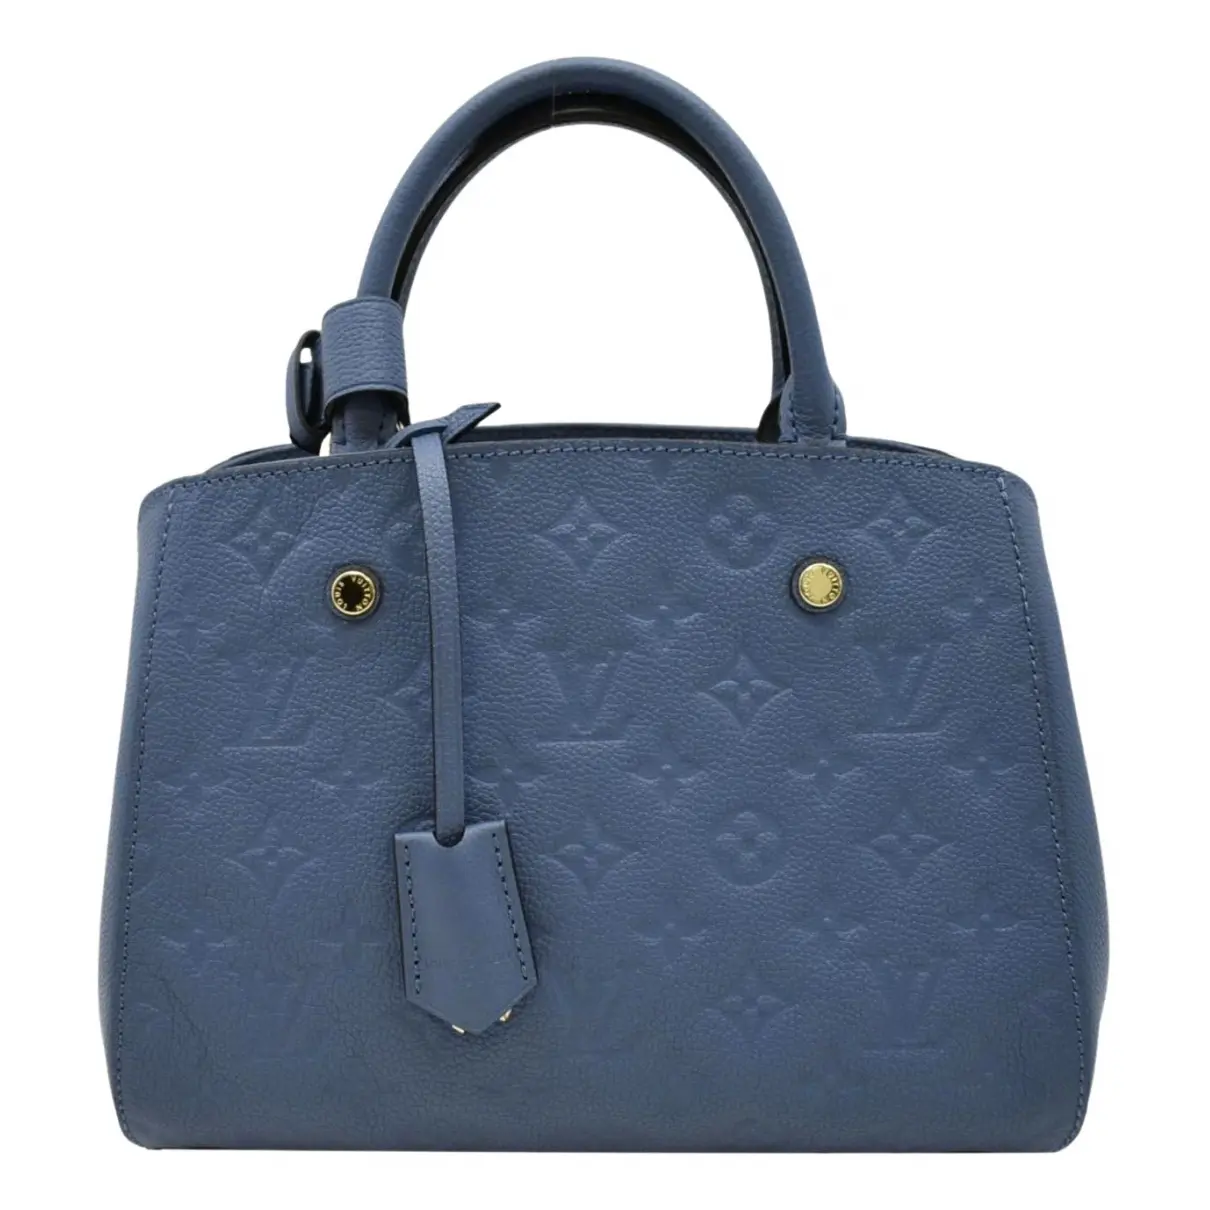 Montaigne leather satchel Louis Vuitton